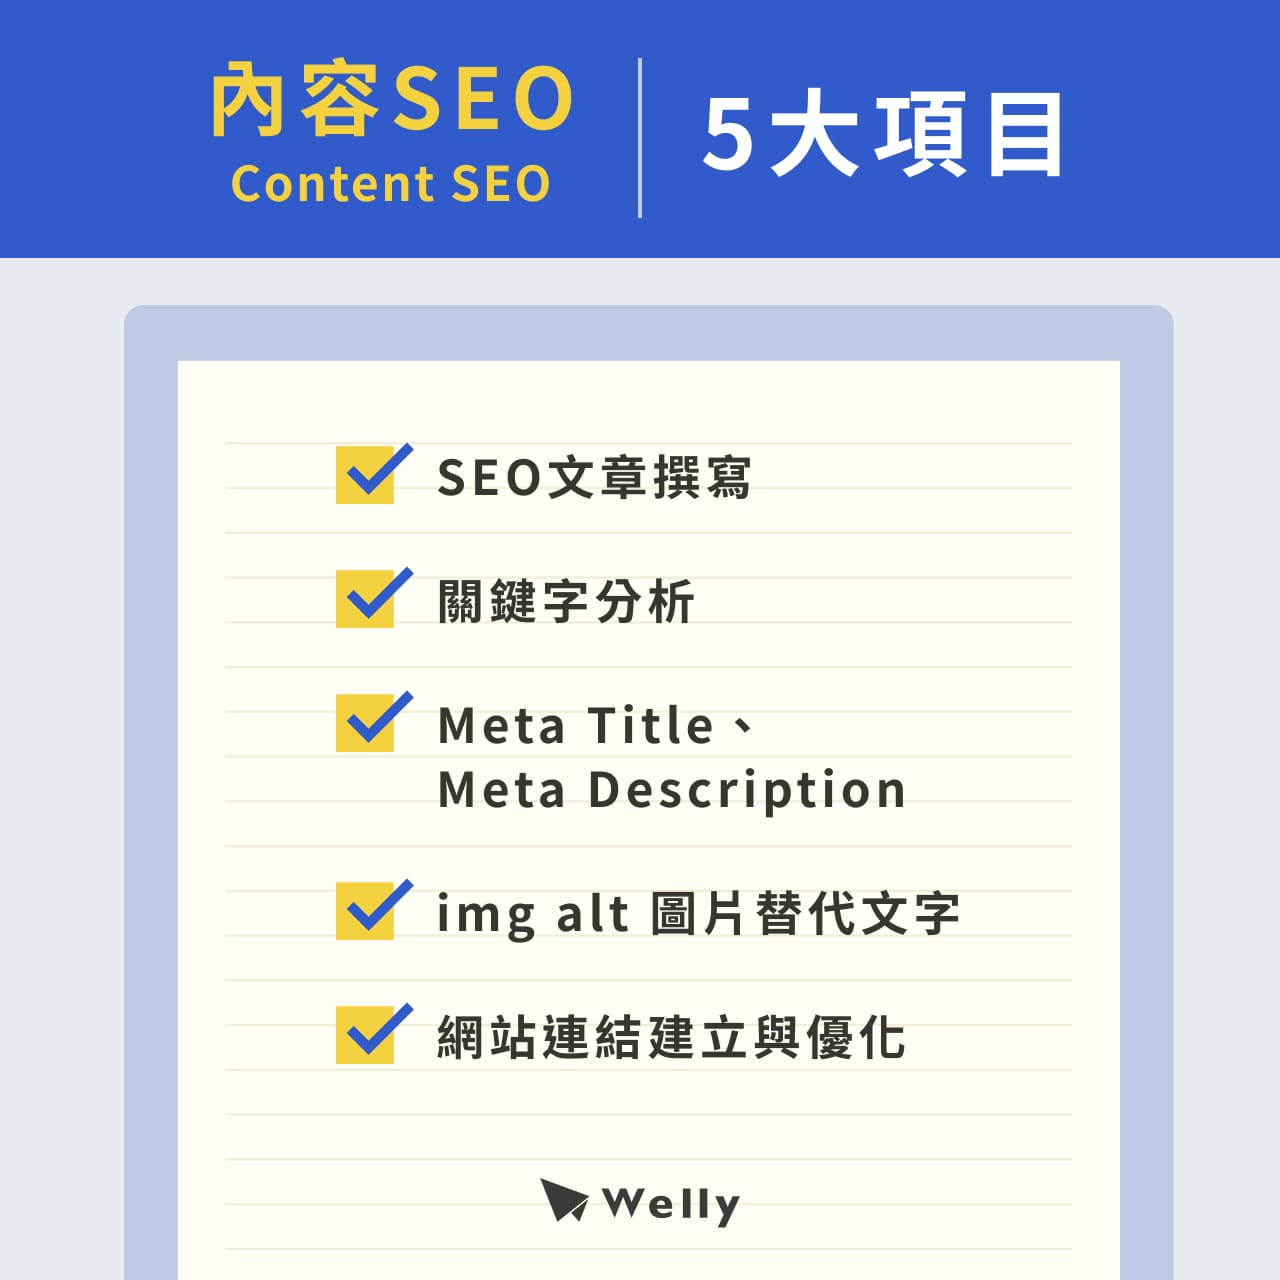 內容SEO（Content SEO）5大項目：SEO文章撰寫、關鍵字分析、Meta Title／Meta Description、img alt 圖片替代文字、網站連結建立與優化